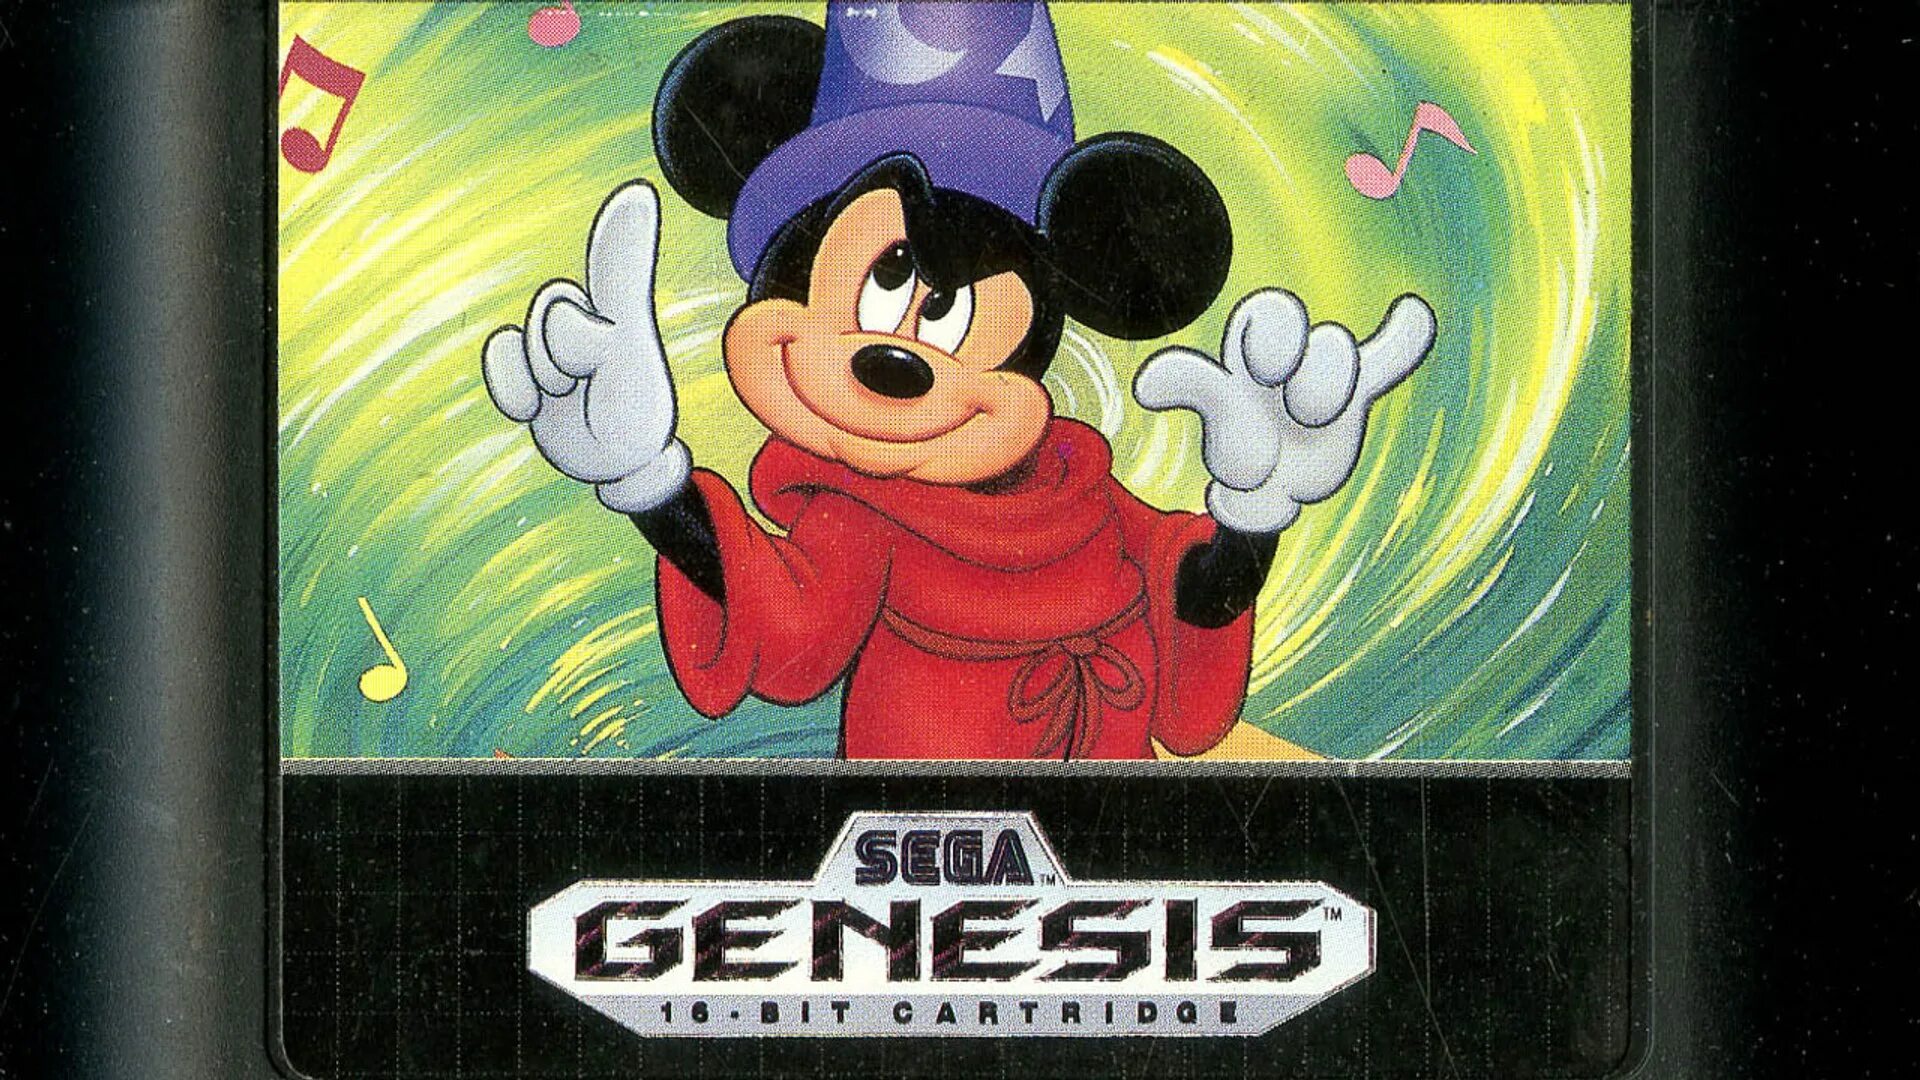 Сега картридж Микки Маус. Игры про Микки Мауса на сега. Mickey Mouse - Fantasia картридж Sega. Сега картридж Мики Маус. Игры сега микки